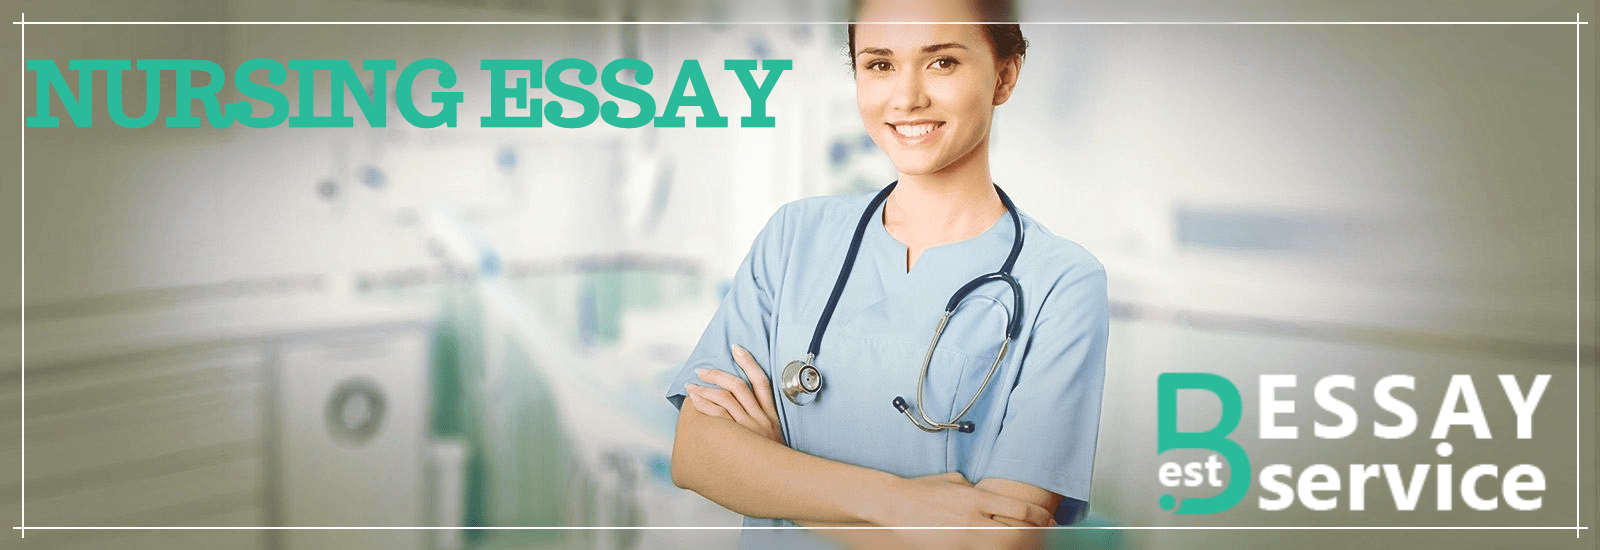 nursing essay buy